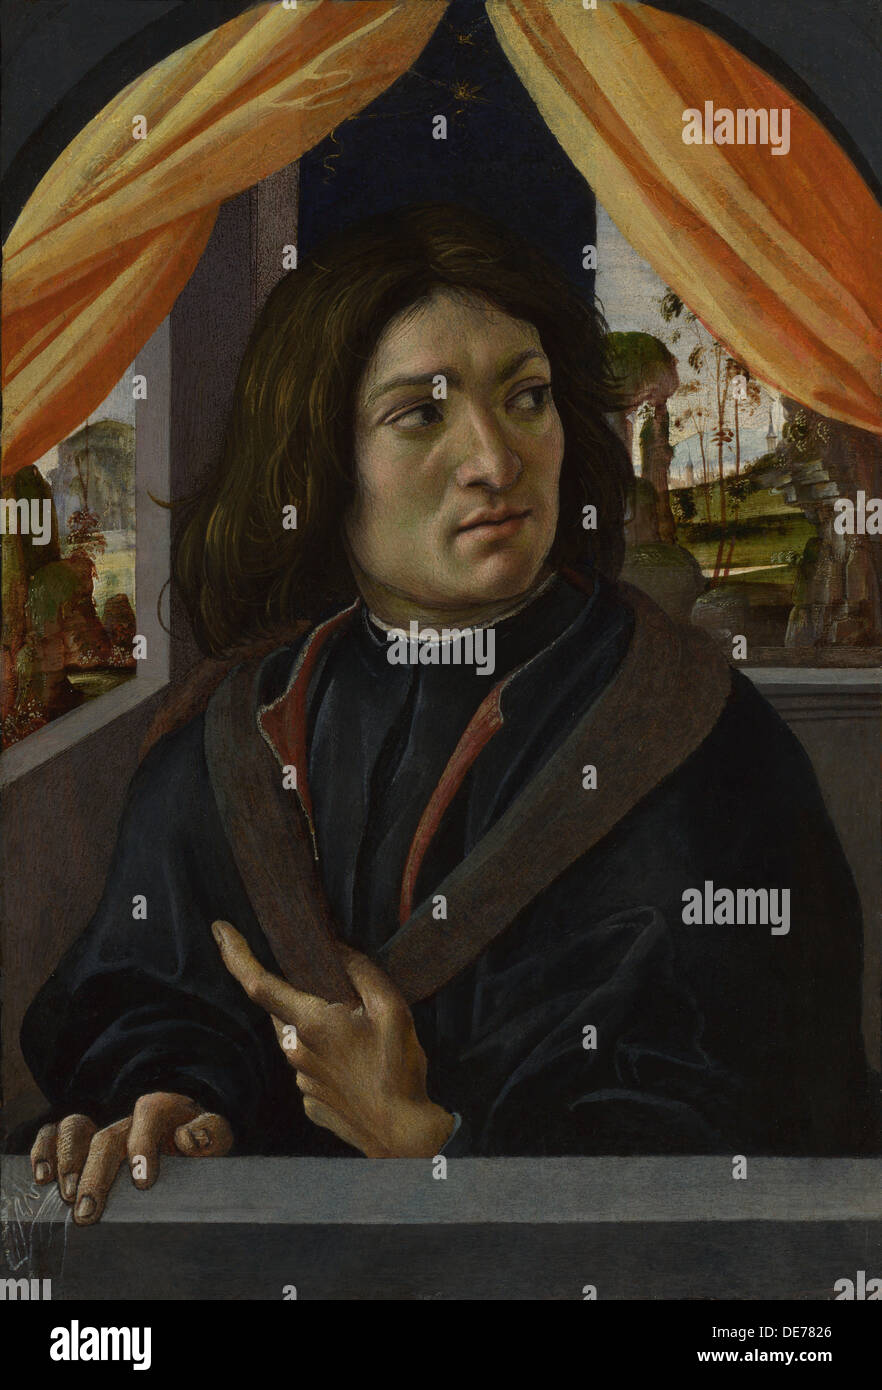 Ritratto di un uomo, c. 1500. Artista: Raffaellino del Garbo (1466-1524) Foto Stock